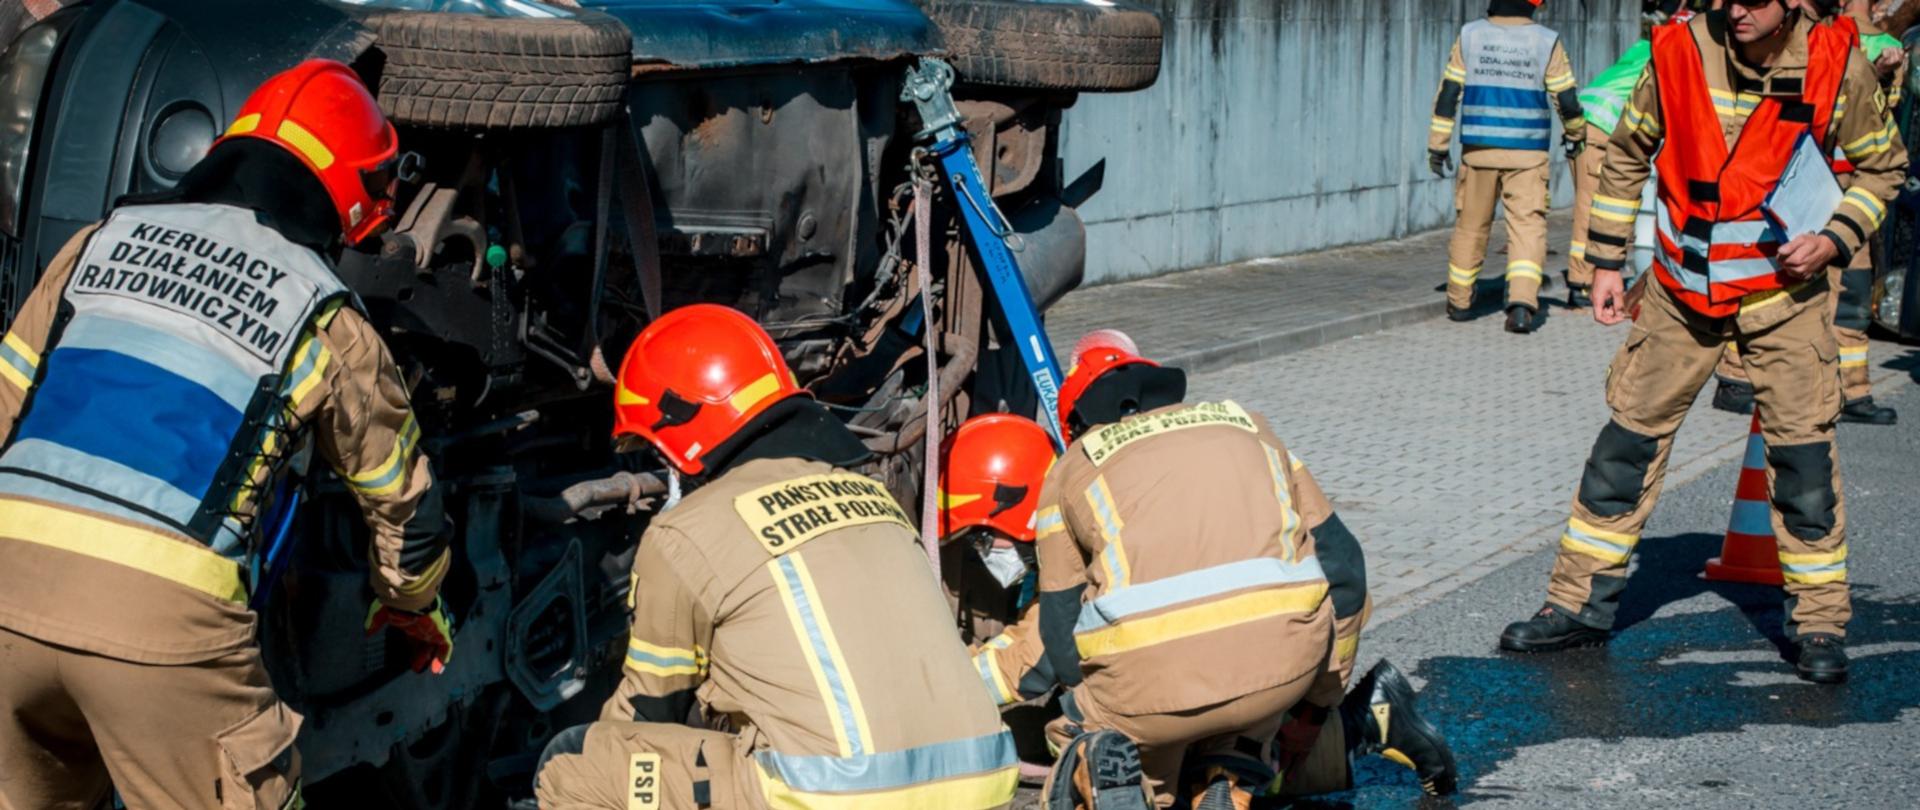 Na zdjęciu czterech strażaków w ubraniach specjalnych dokonuje stabilizacji pojazdu przewróconego na bok. Obok stoi strażak w ubraniu specjalnym - sędzia